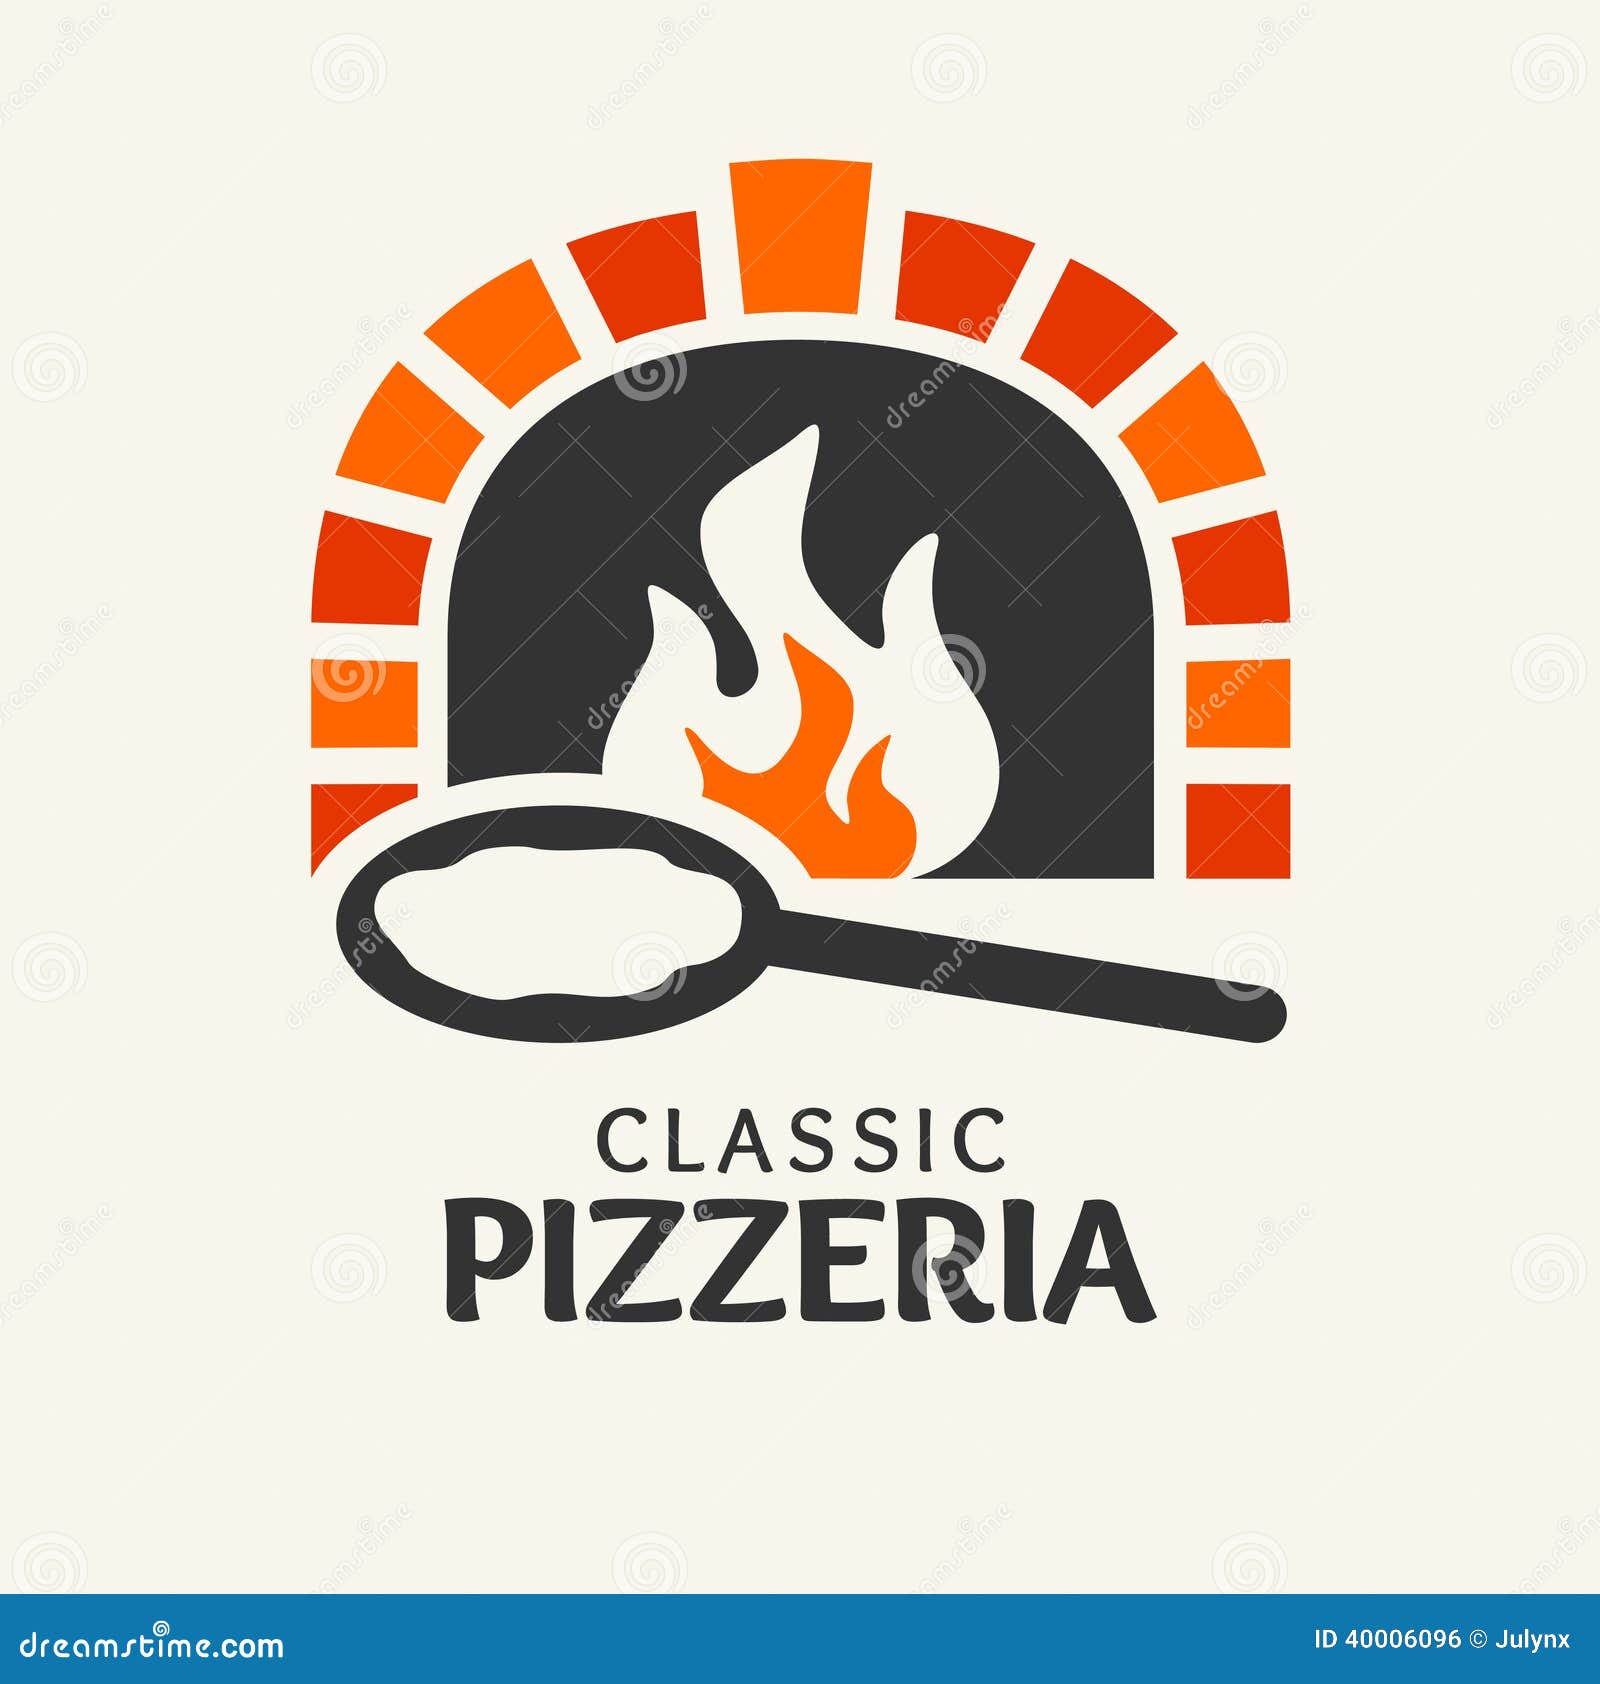 classic pizzeria logotype